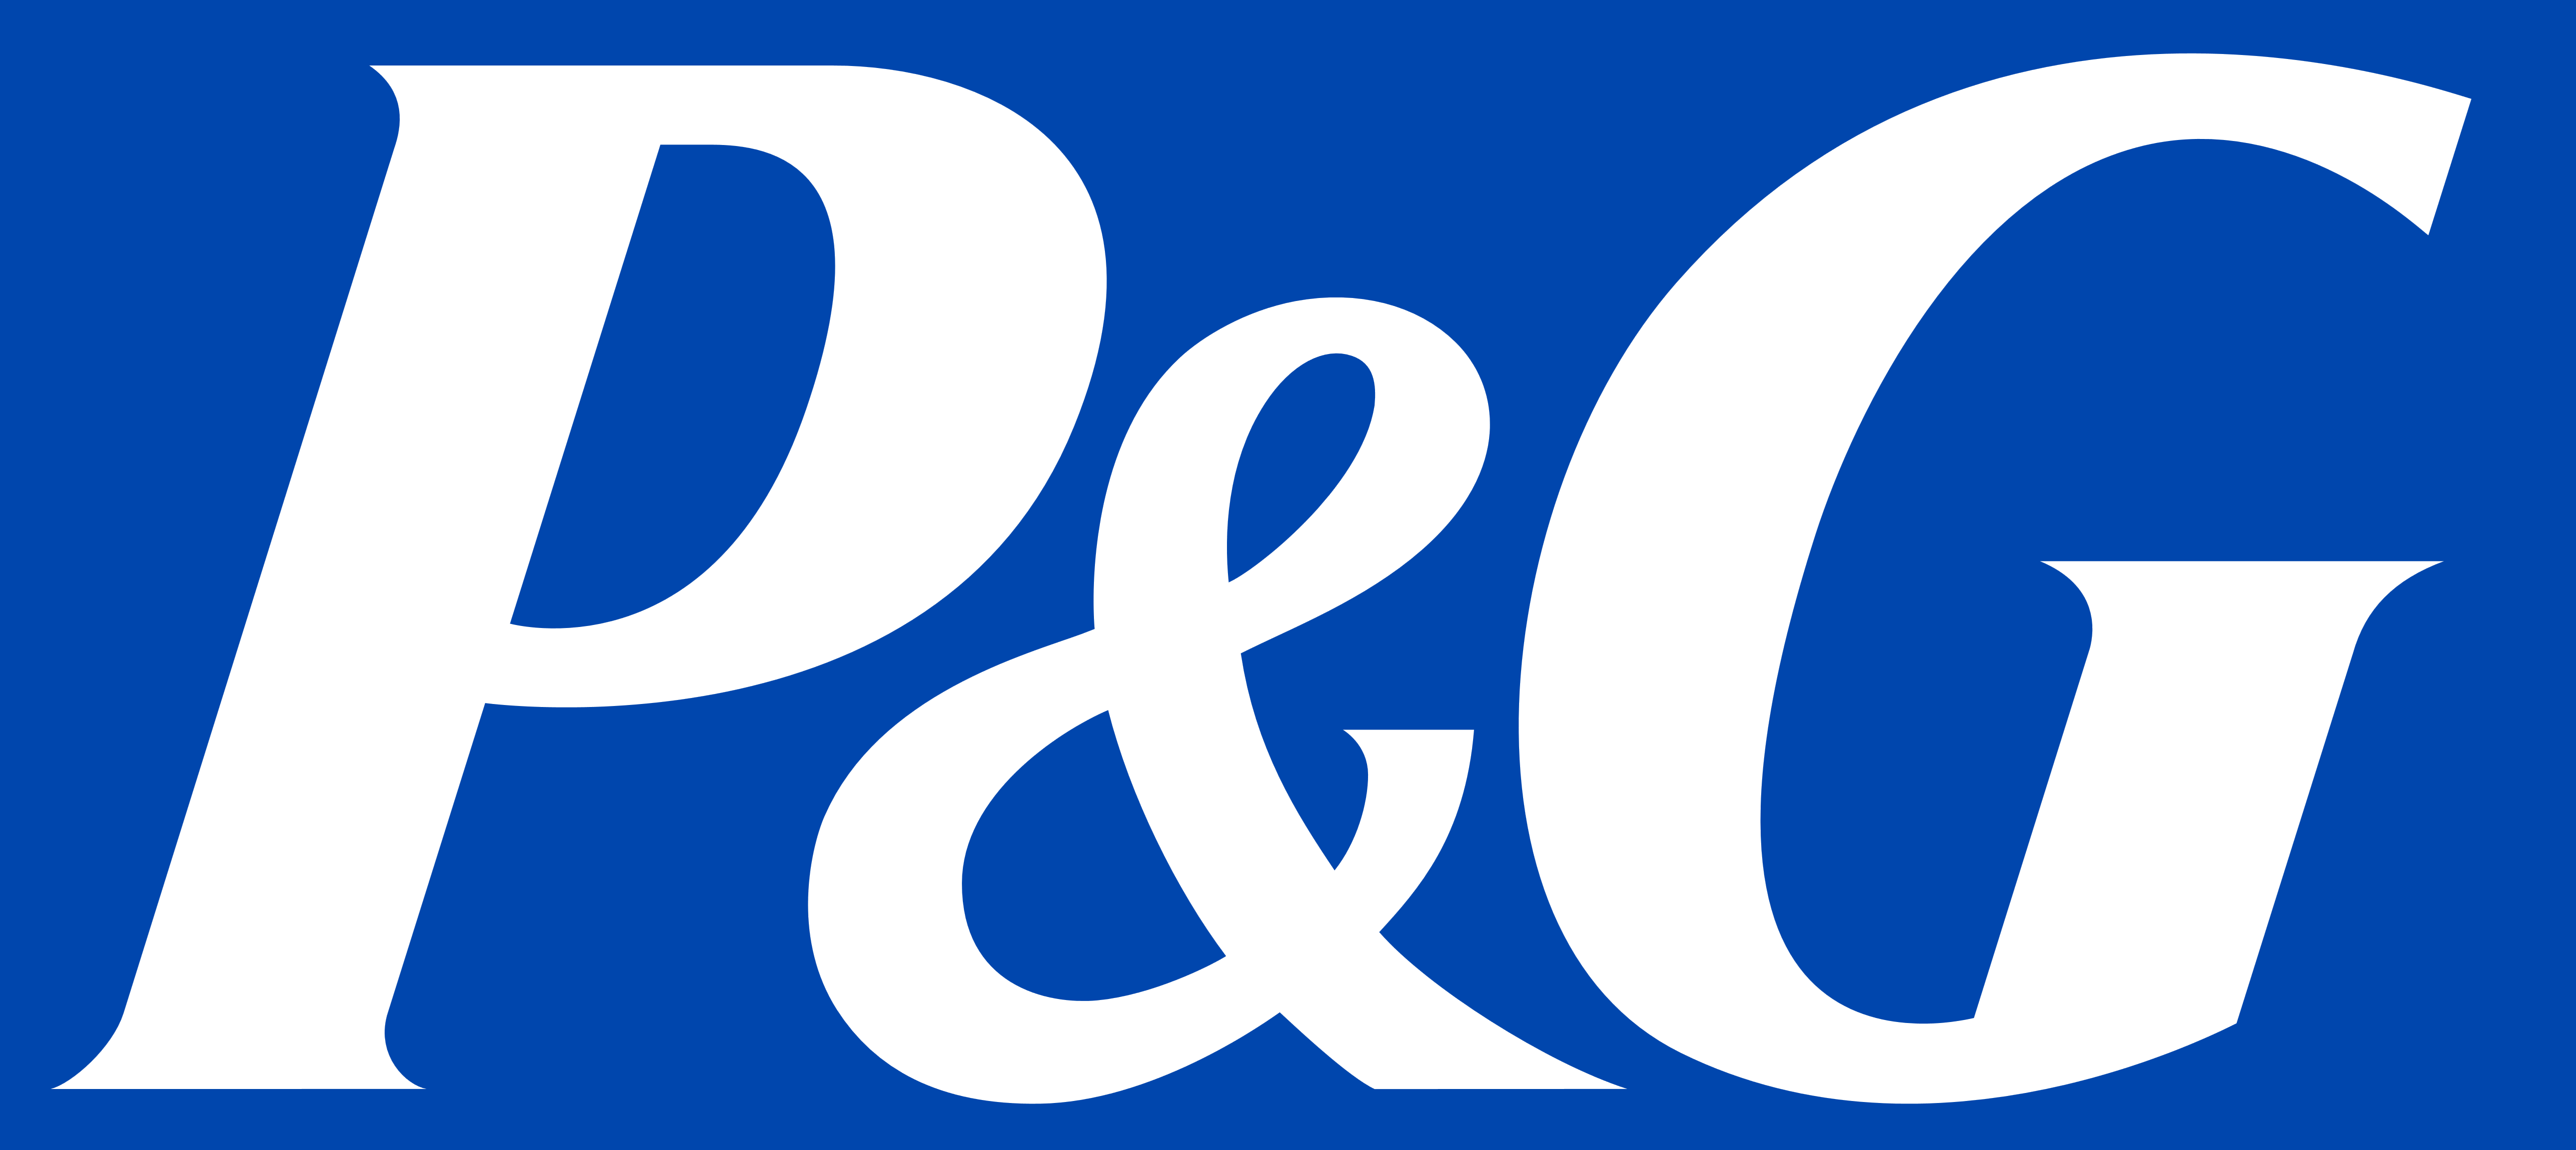 P&G Logo - P&G logo, Procter and Gamble logo (blue background) – Logos Download